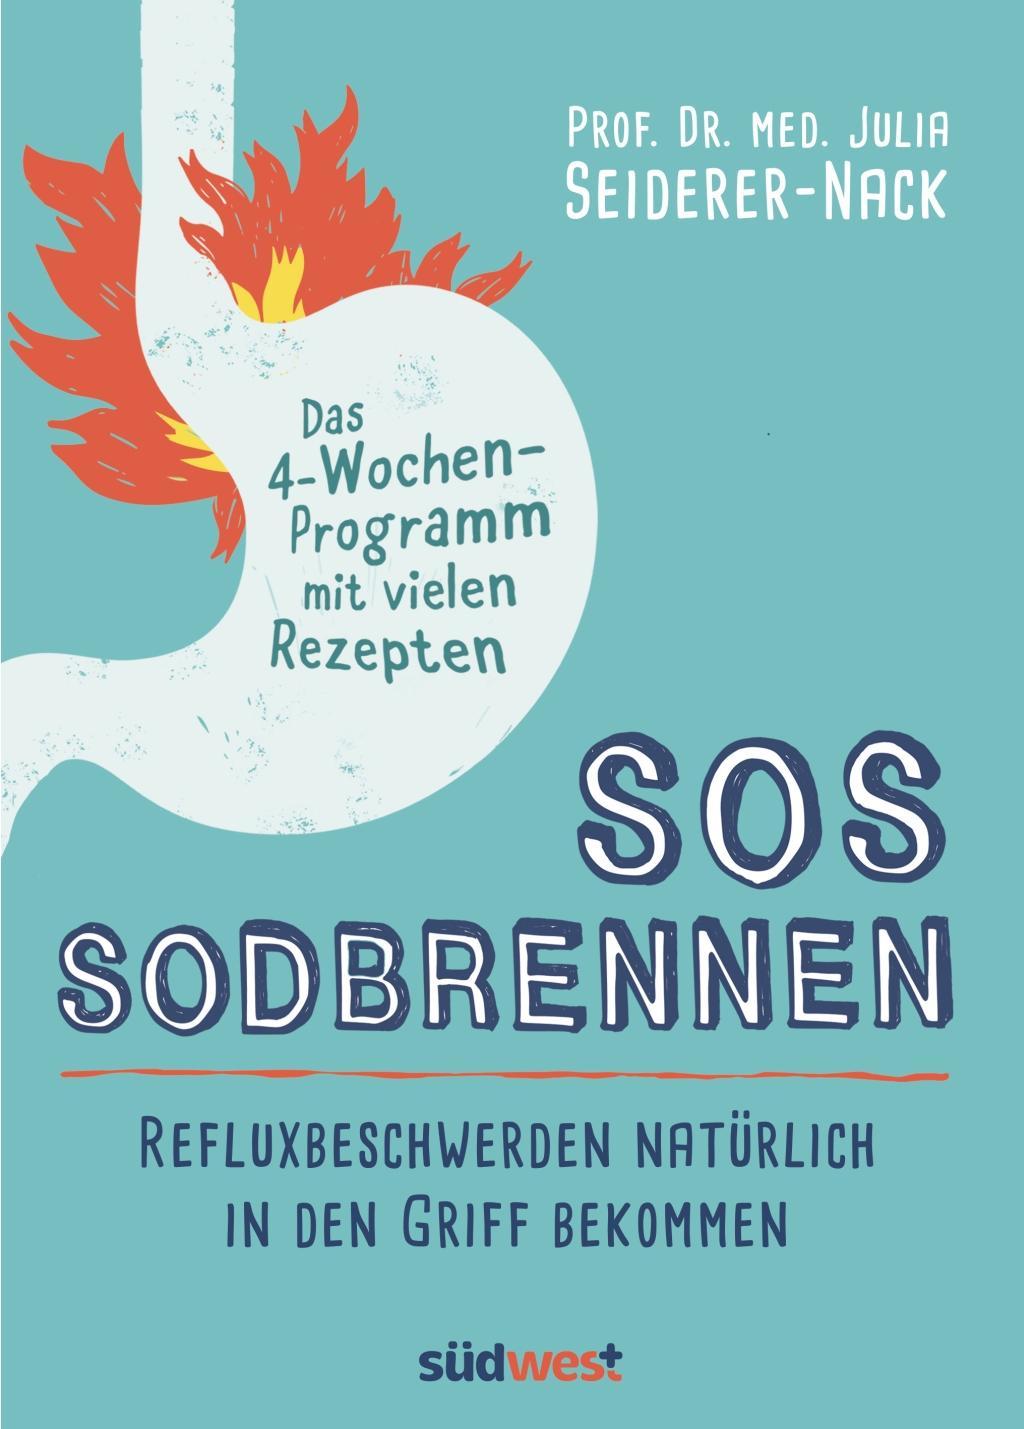 Carte SOS Sodbrennen 